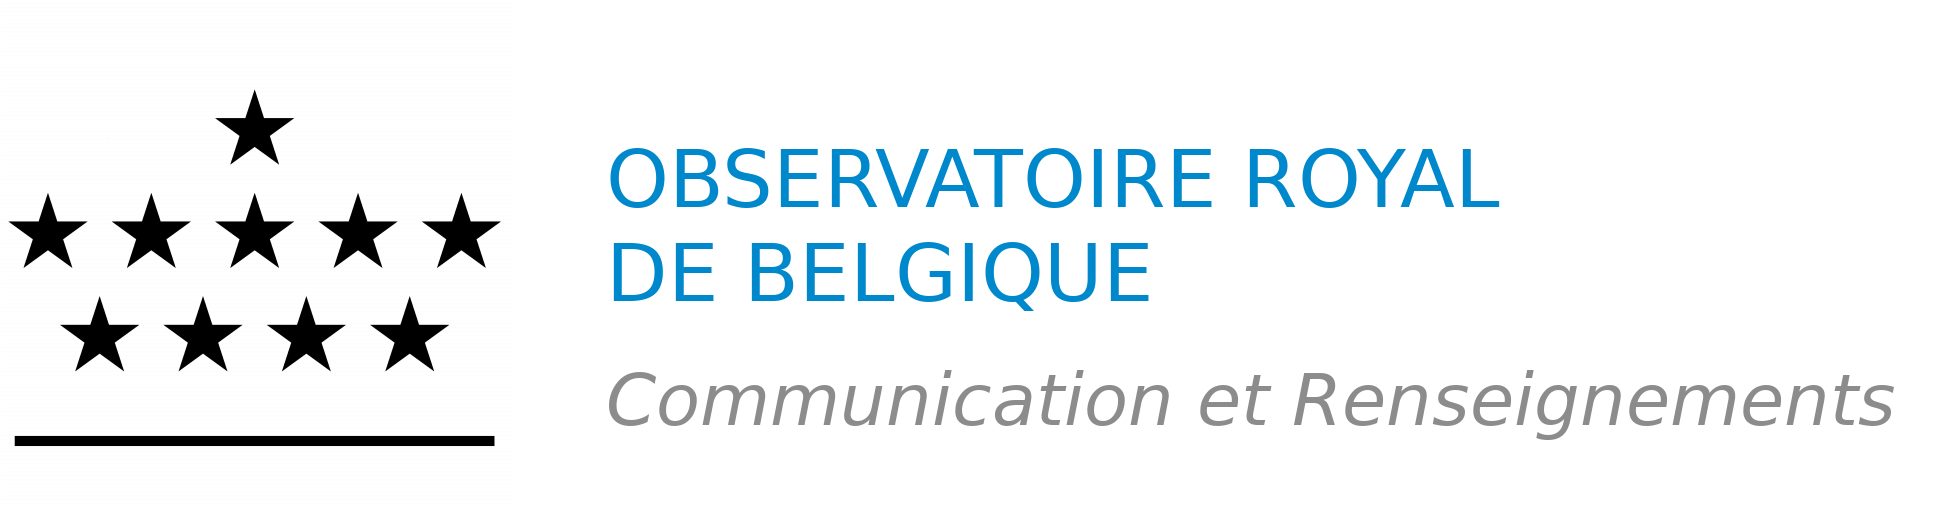 Observatoire royal de Belgique – Communication et Renseignements